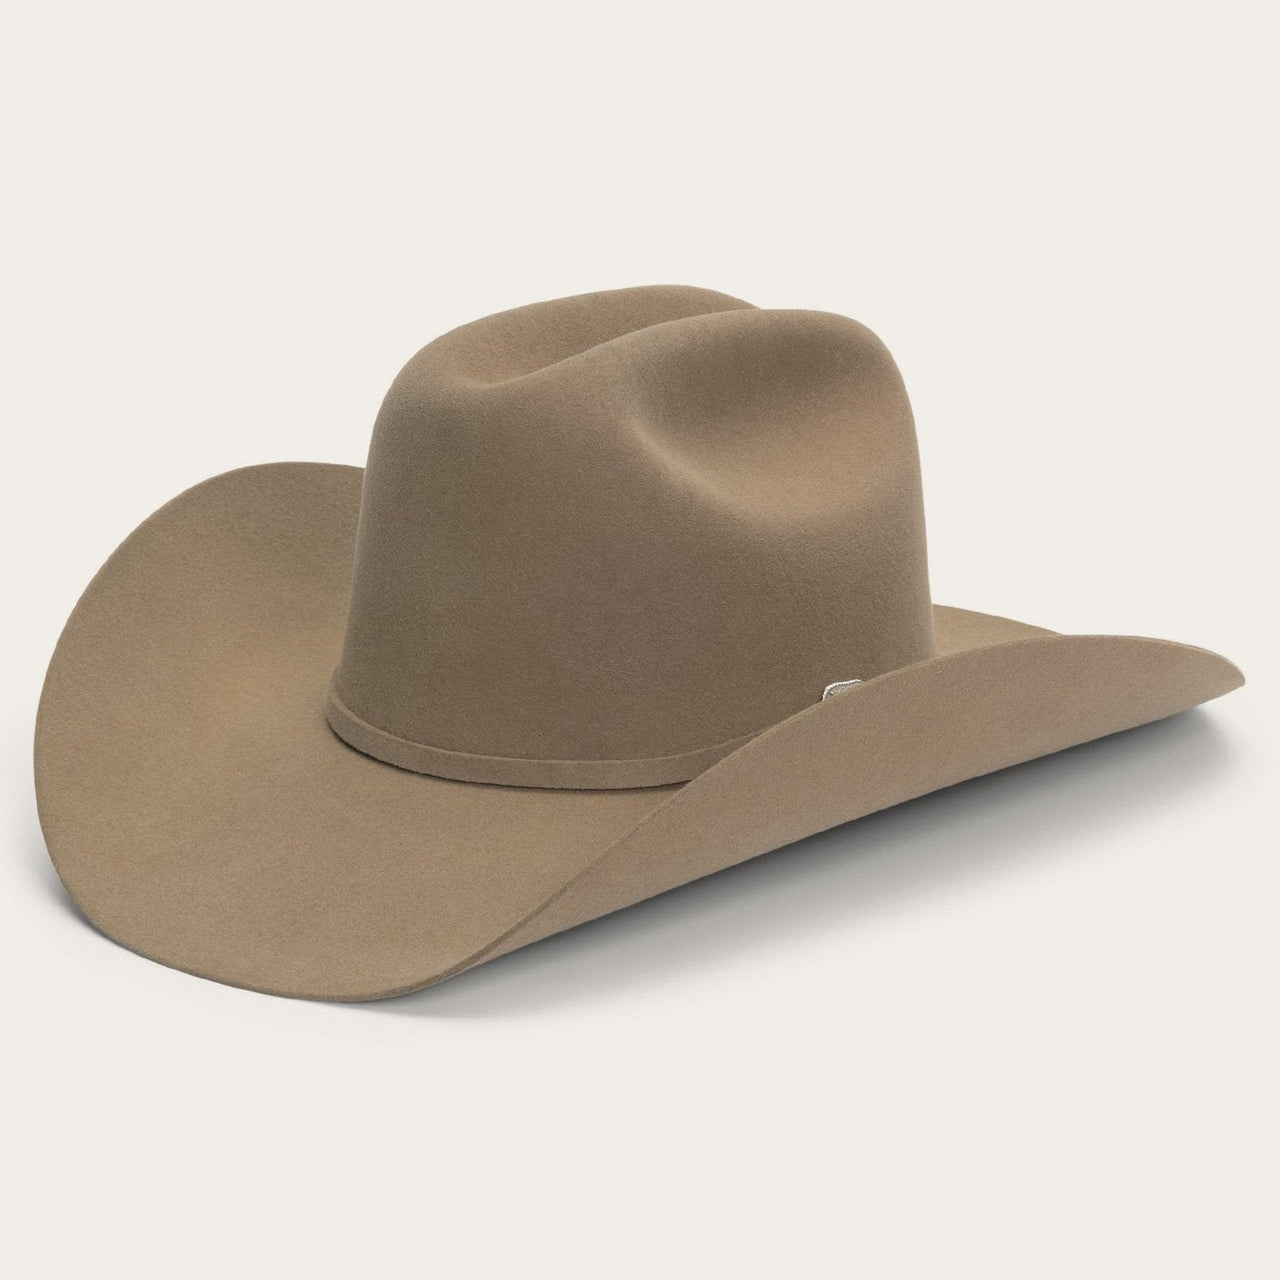 6x Stetson Skyline Sombrero Cowboy de Fieltro de Piel Sahara